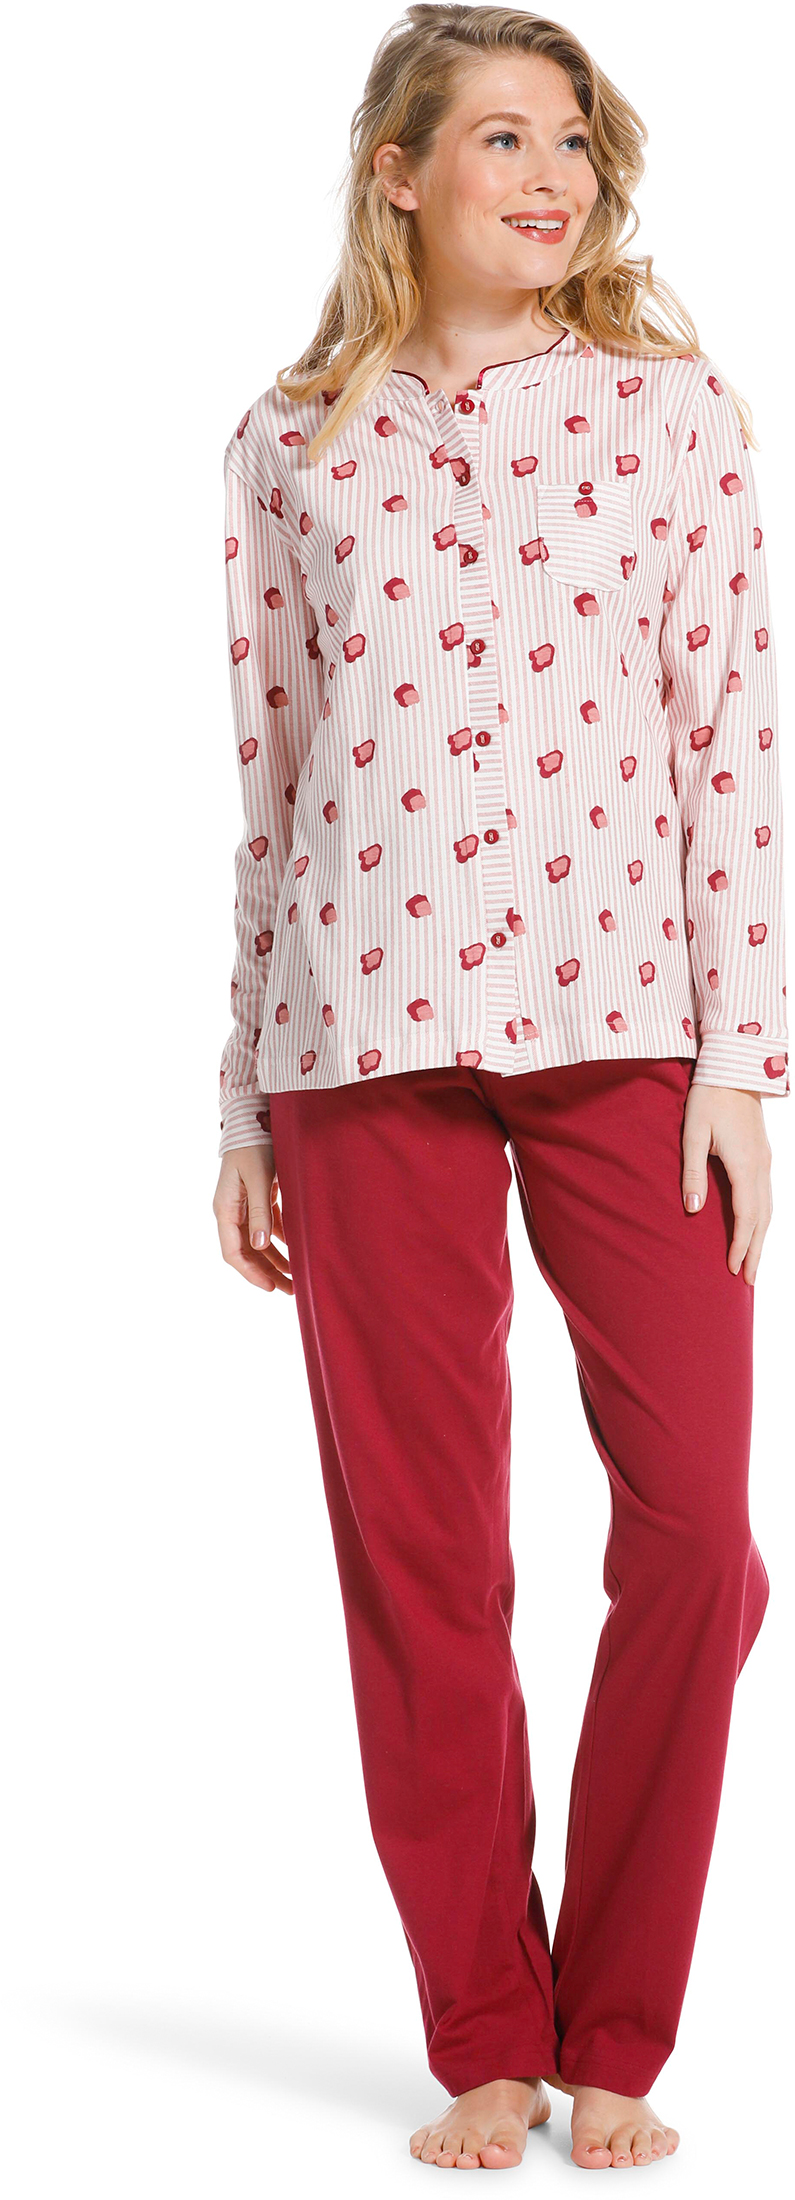 Pastunette doorknoop dames pyjama 20222-104-6 - Rose - 44